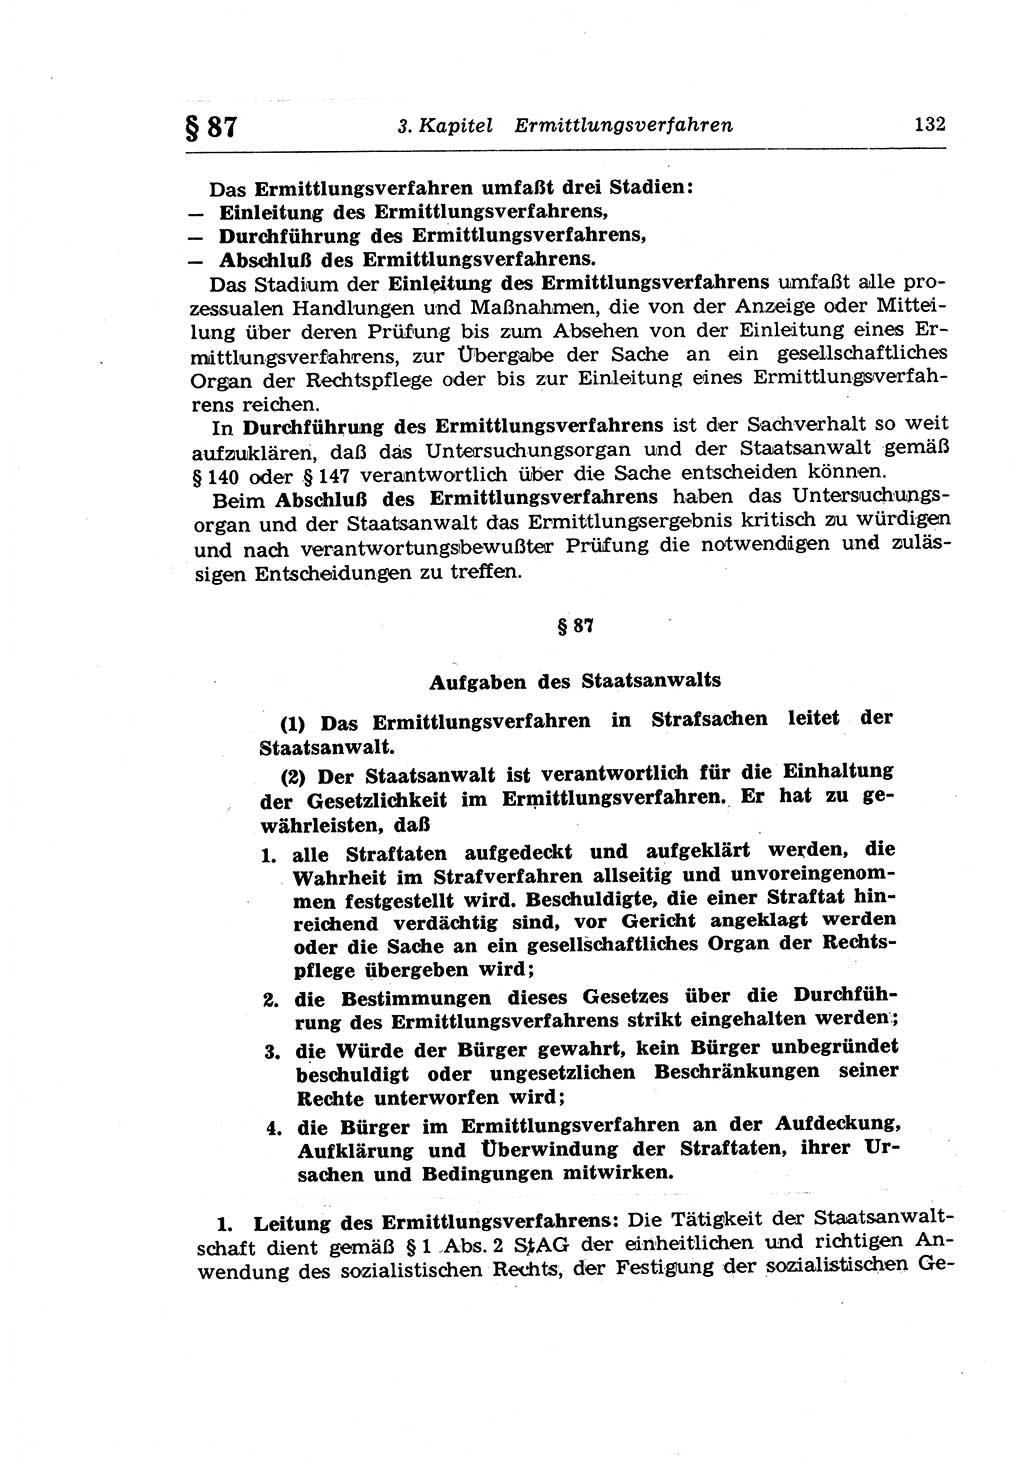 Strafprozeßrecht der DDR (Deutsche Demokratische Republik), Lehrkommentar zur Strafprozeßordnung (StPO) 1968, Seite 132 (Strafprozeßr. DDR Lehrkomm. StPO 19688, S. 132)